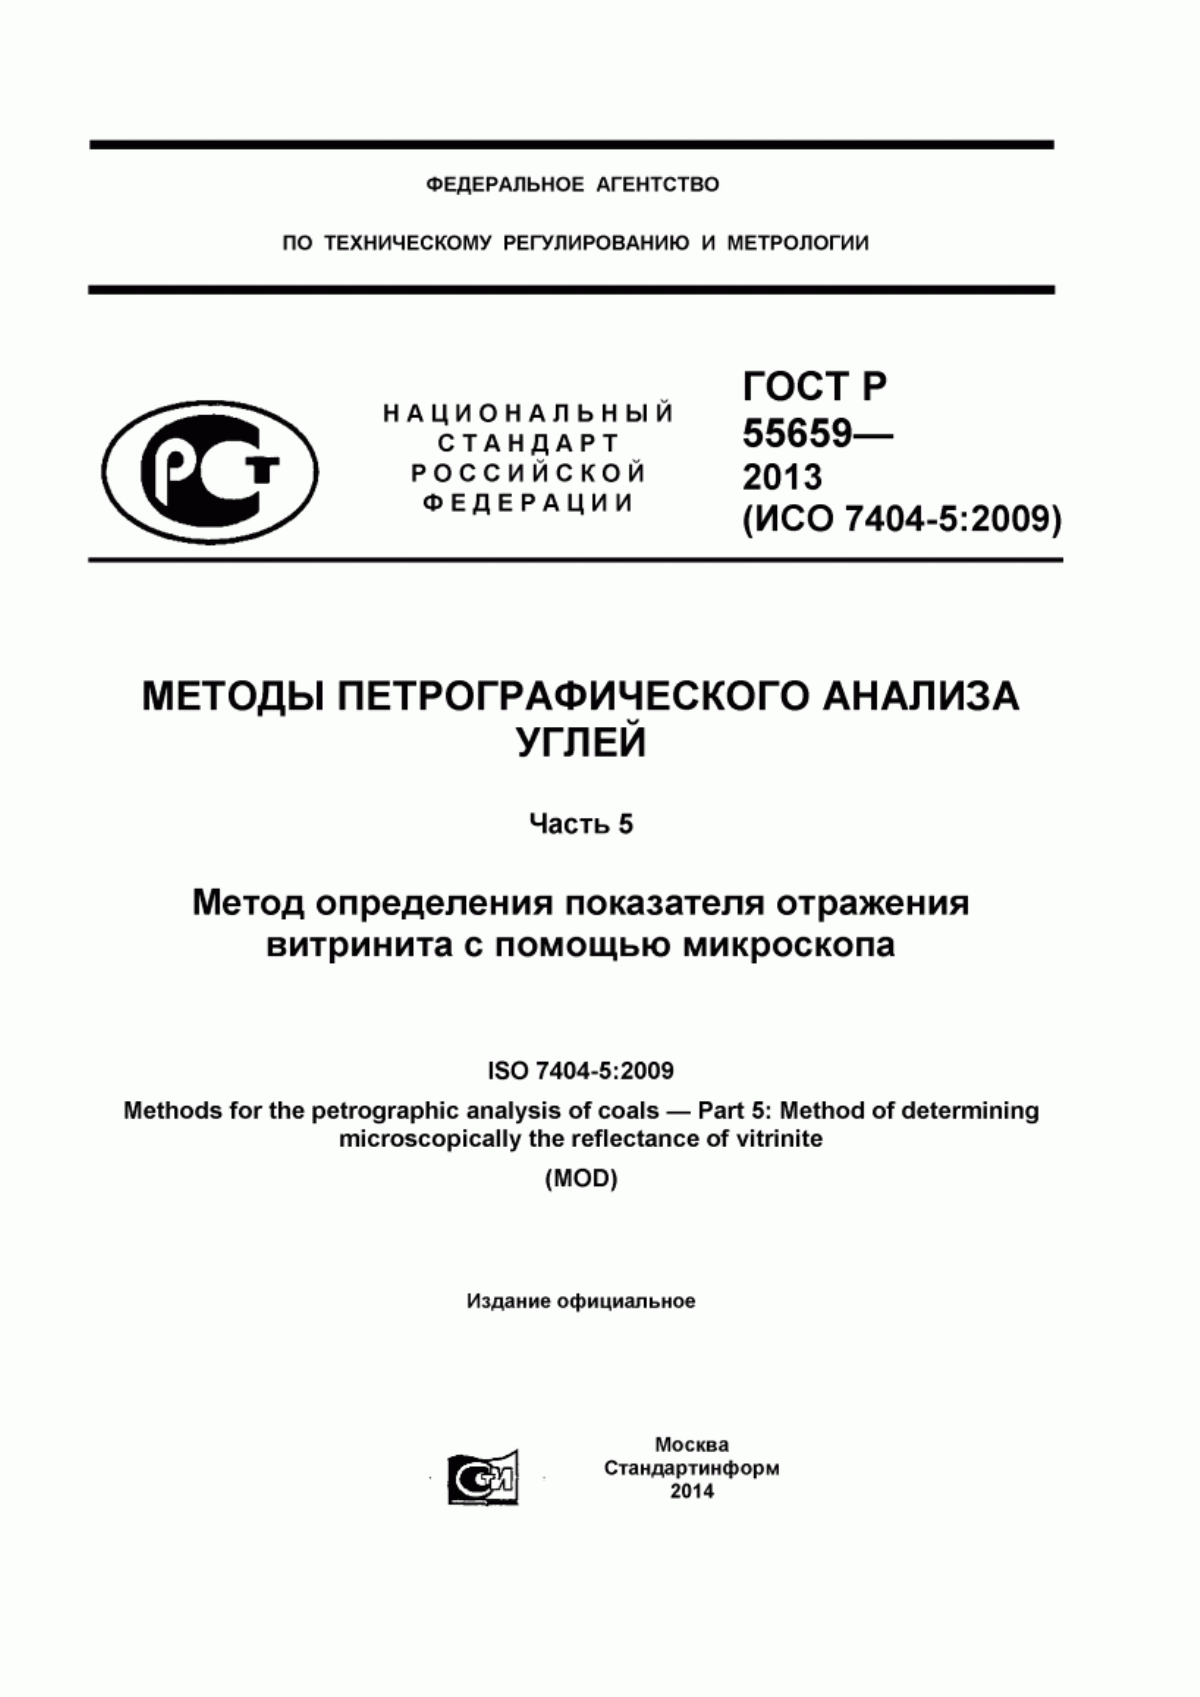 ГОСТ Р 55659-2013 Методы петрографического анализа углей. Часть 5. Метод определения показателя отражения витринита с помощью микроскопа